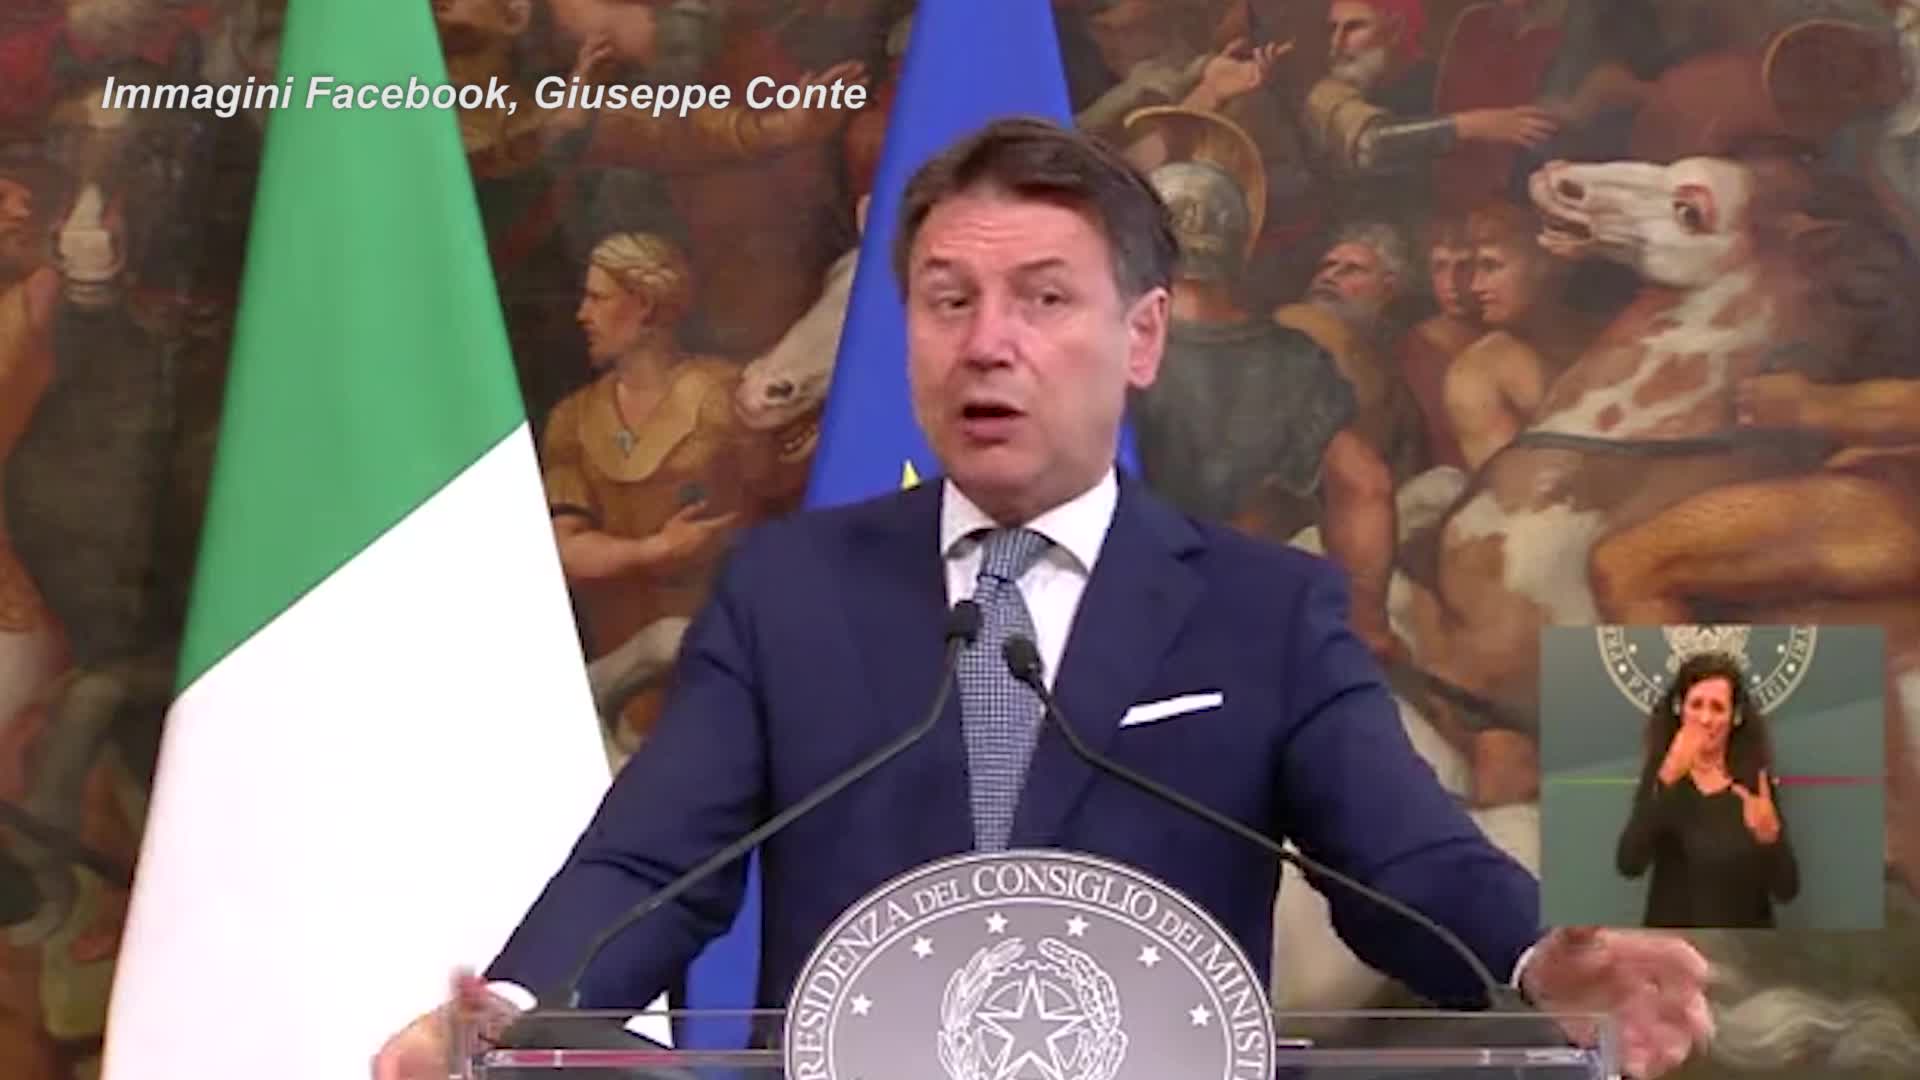 Giuseppe Conte esclude la possibilità di candidarsi a sindaco di Roma